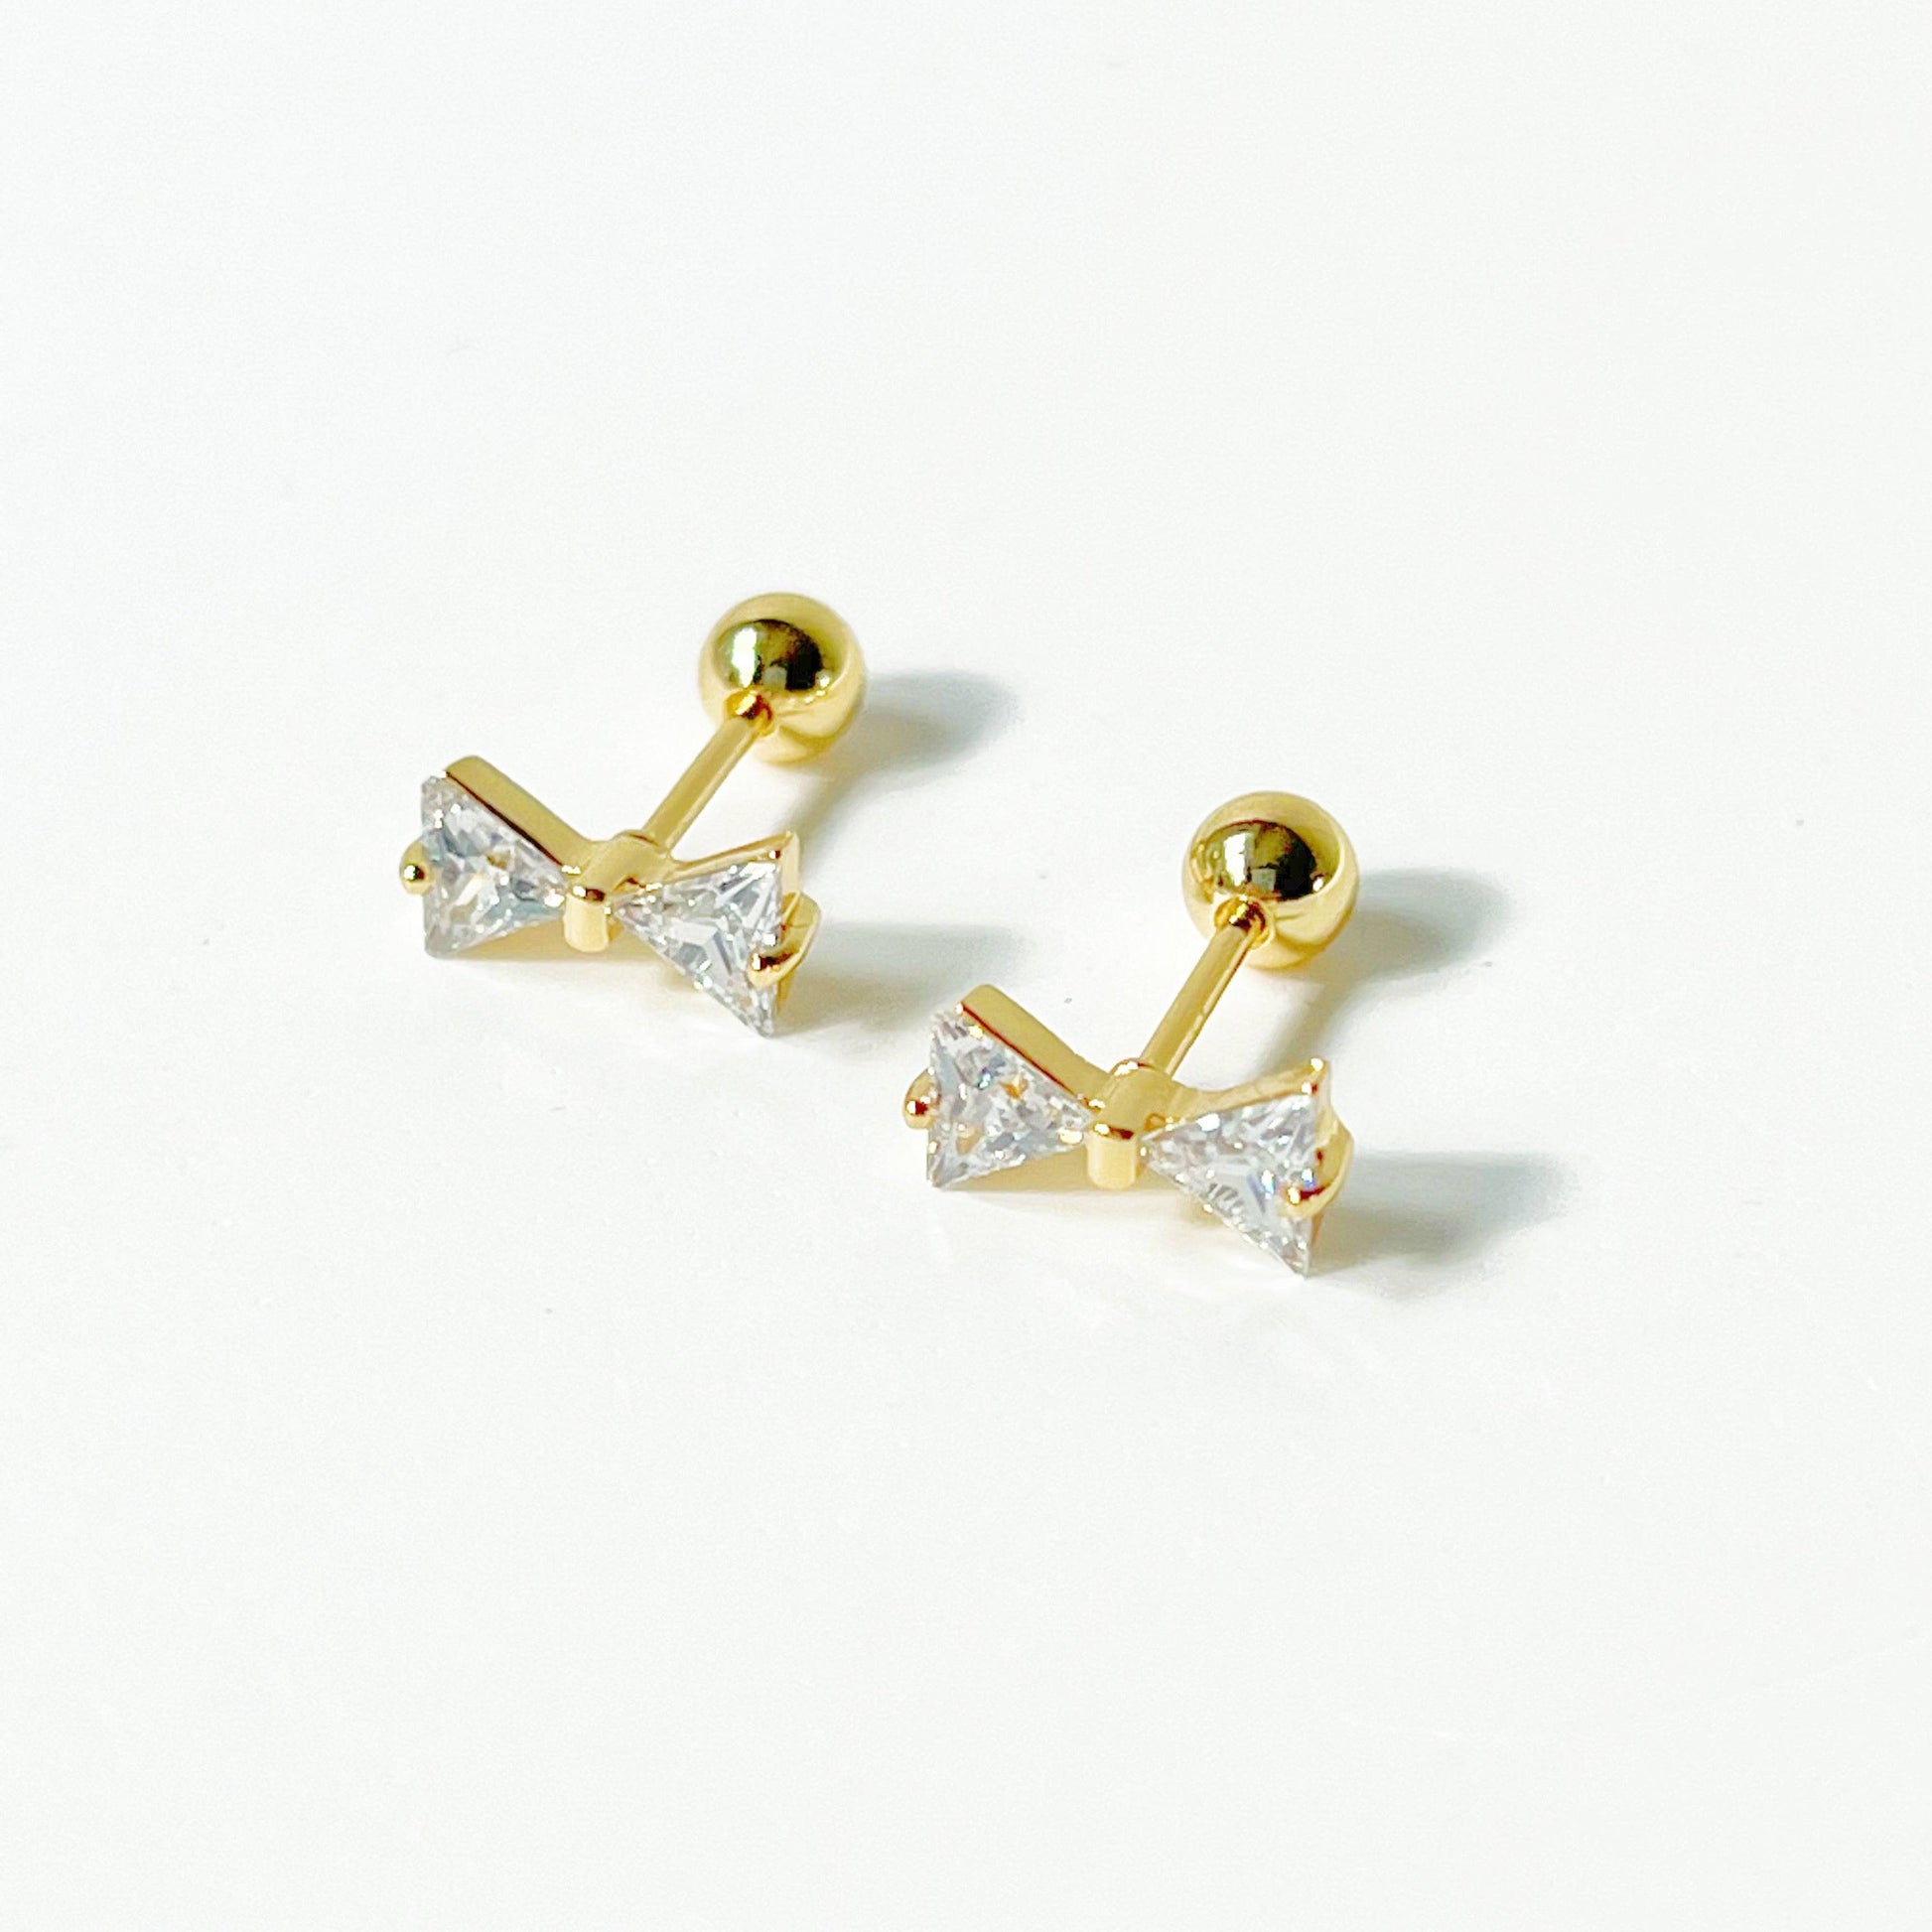 Gold Bow Zircon Earrings - Small Size Screw Back Earrings-Ninaouity